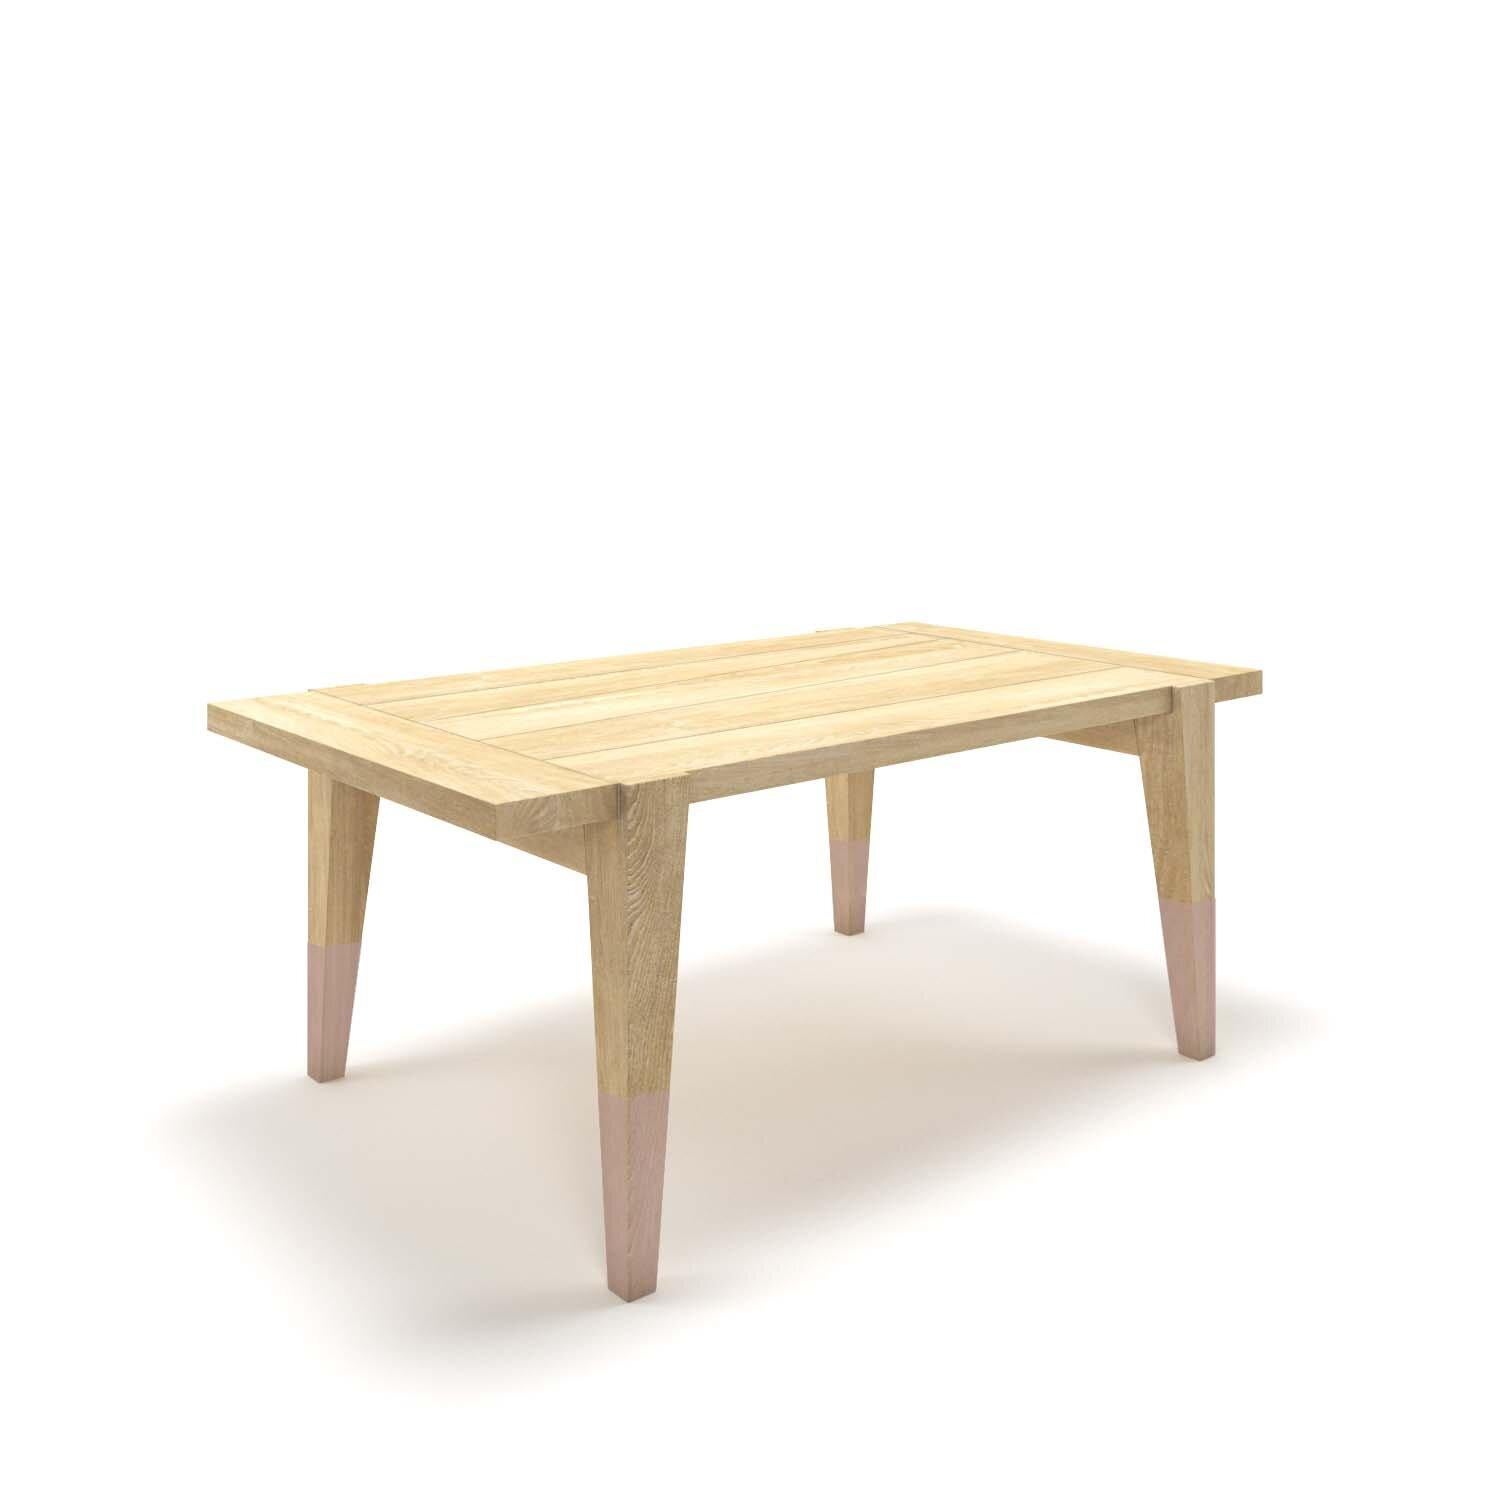 Transformez votre espace repas avec la table UVA ! Fabriquée en chêne massif, cette table étonnante fera sensation dans n'importe quelle pièce. Savourez vos repas au milieu d'une beauté intemporelle. Améliorez votre maison dès aujourd'hui avec UVA